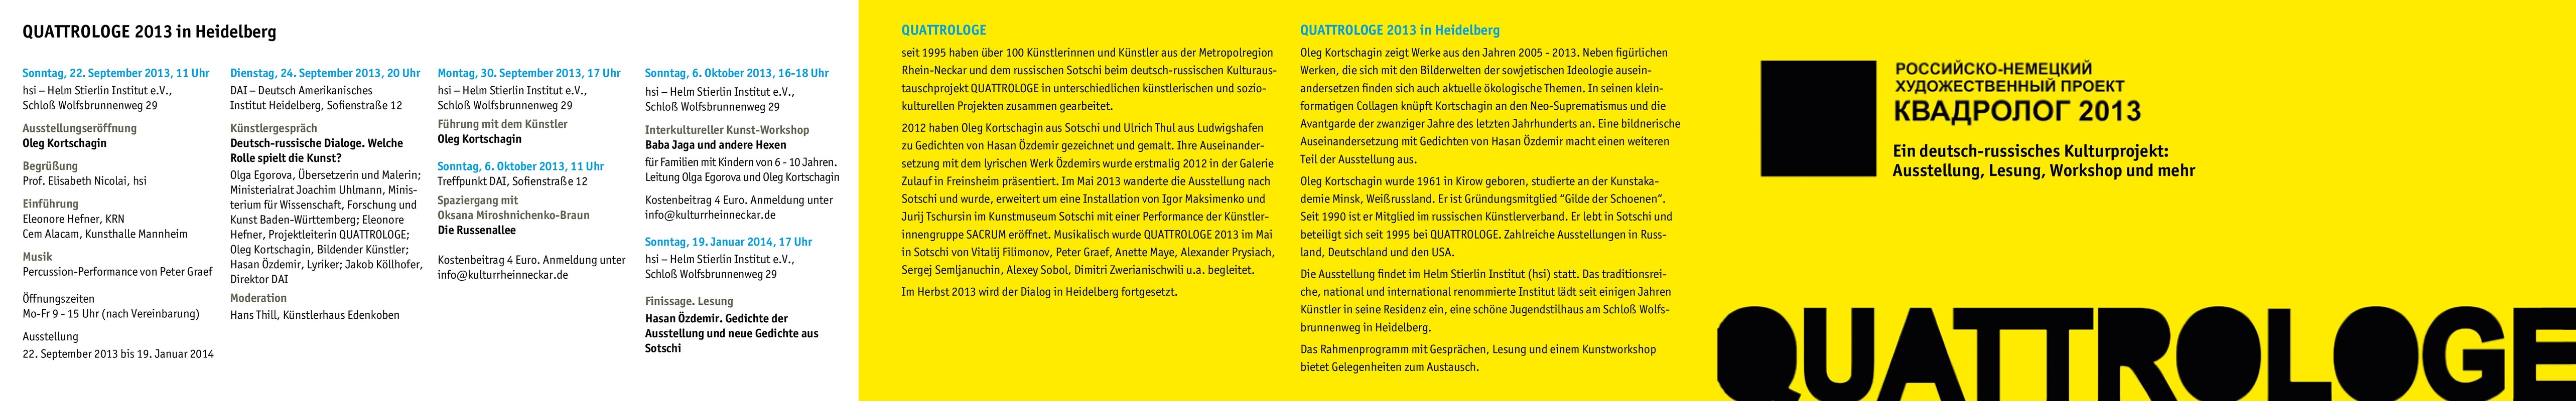 Quattrologe 2013 in Heidelberg